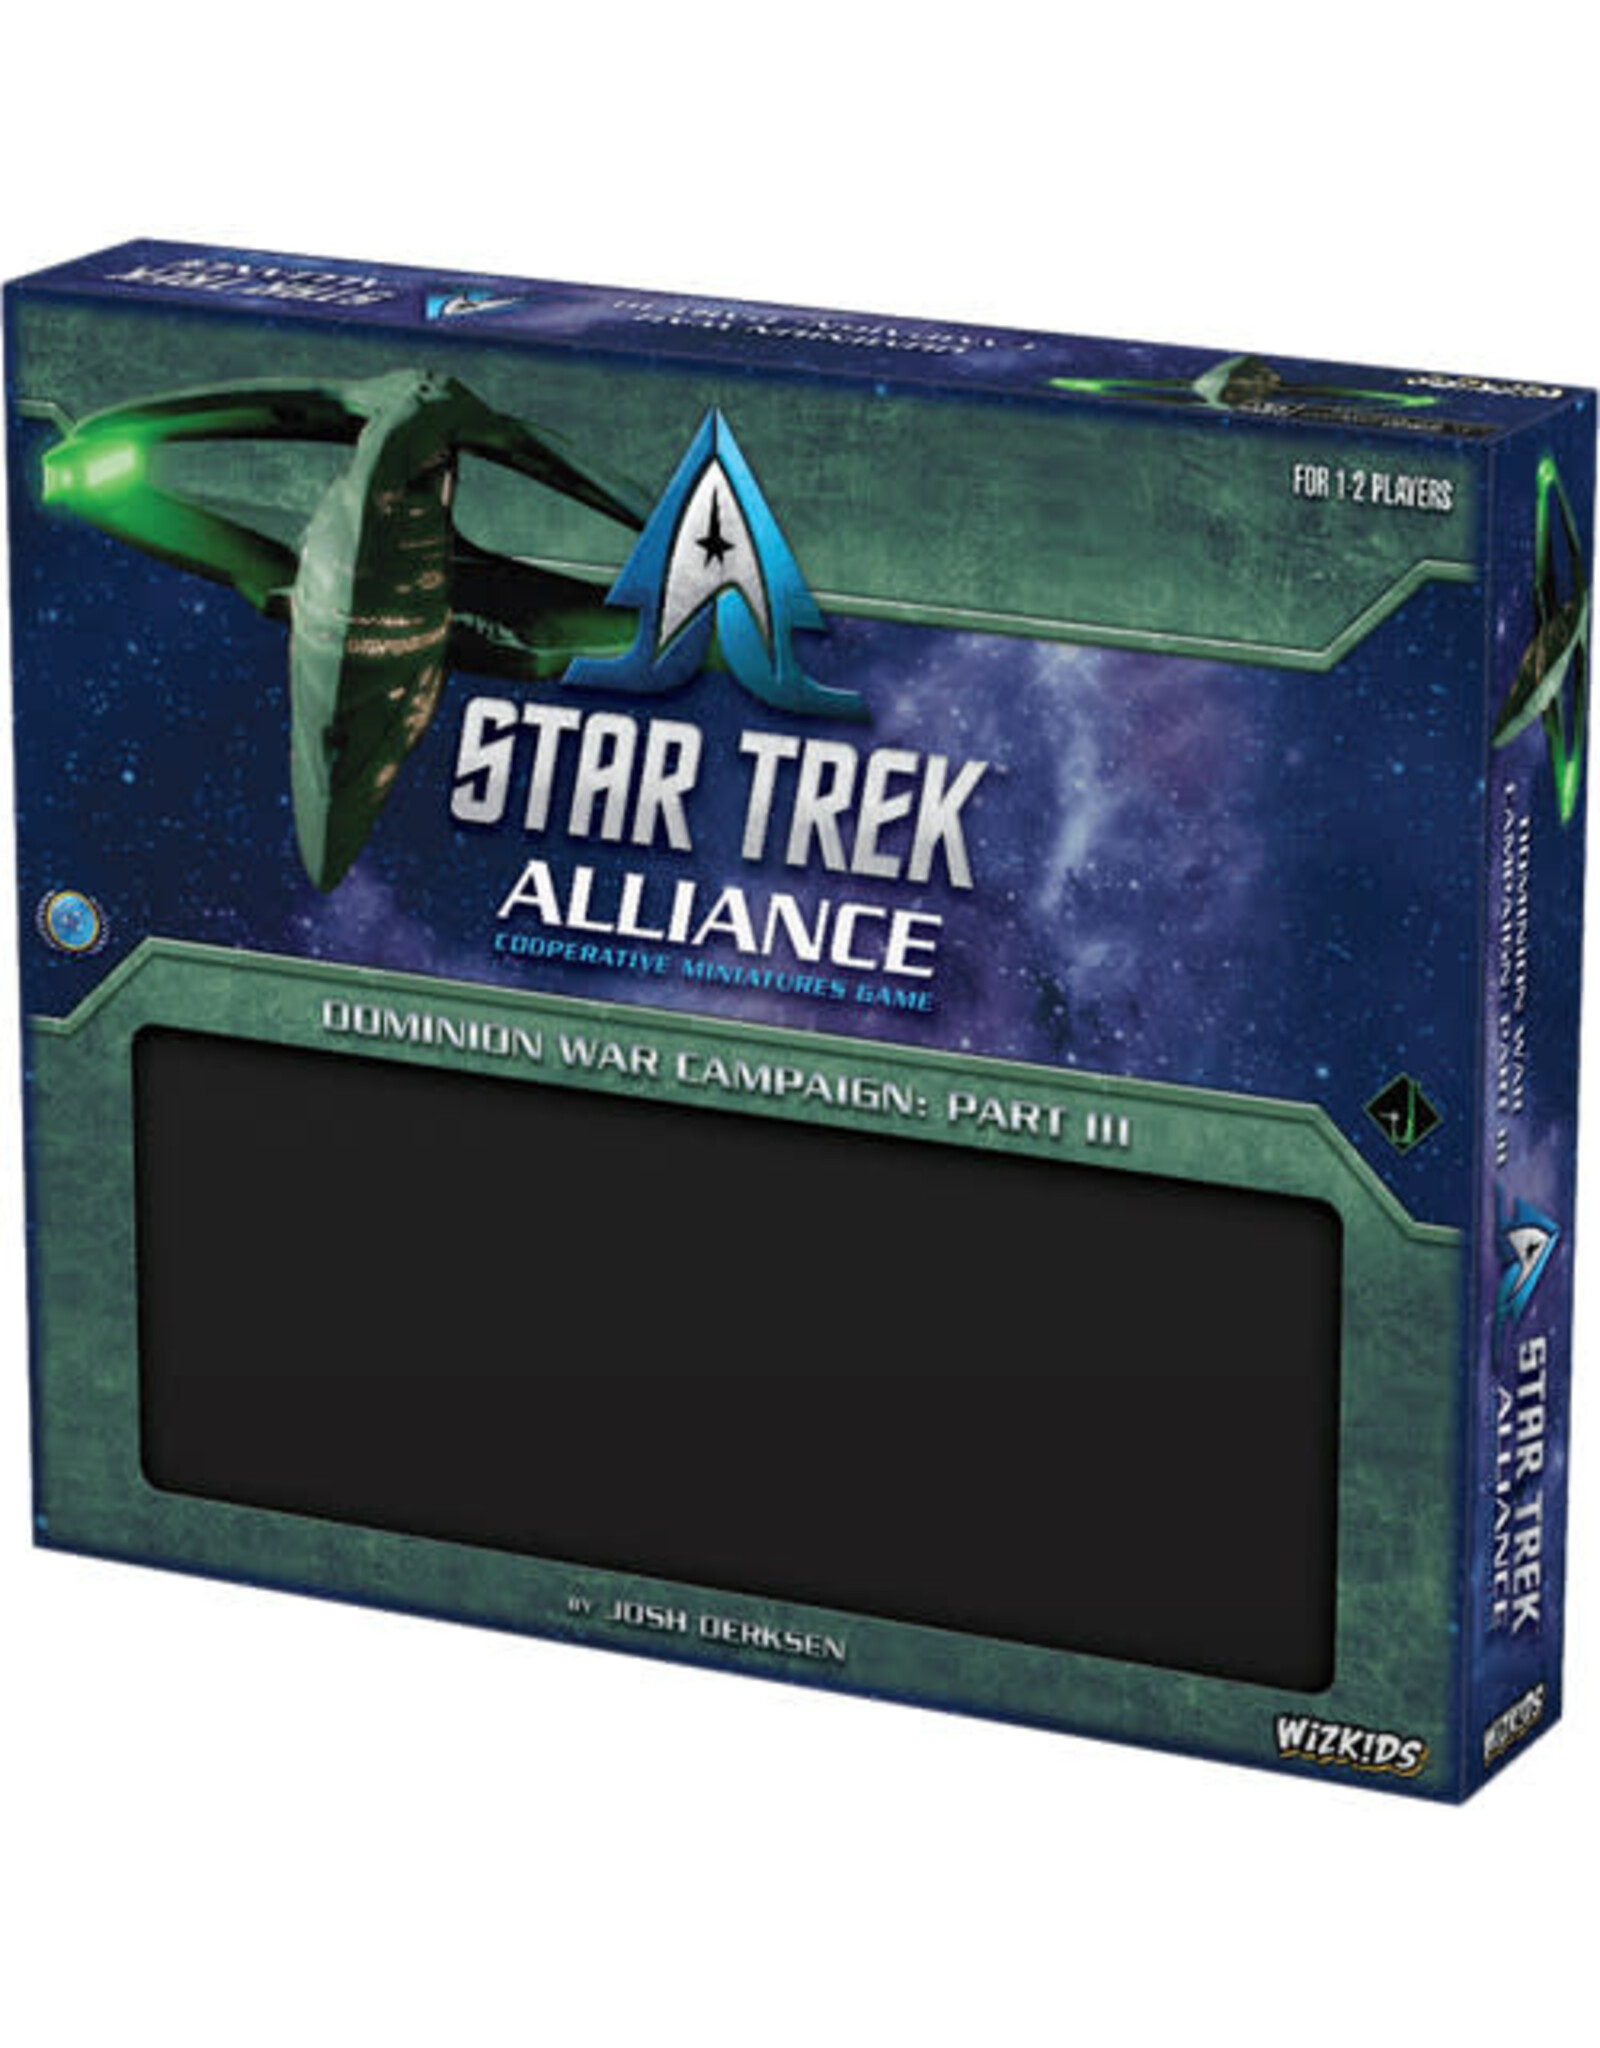 WizKids Star Trek: Alliance - Dominion War Campaign Part III